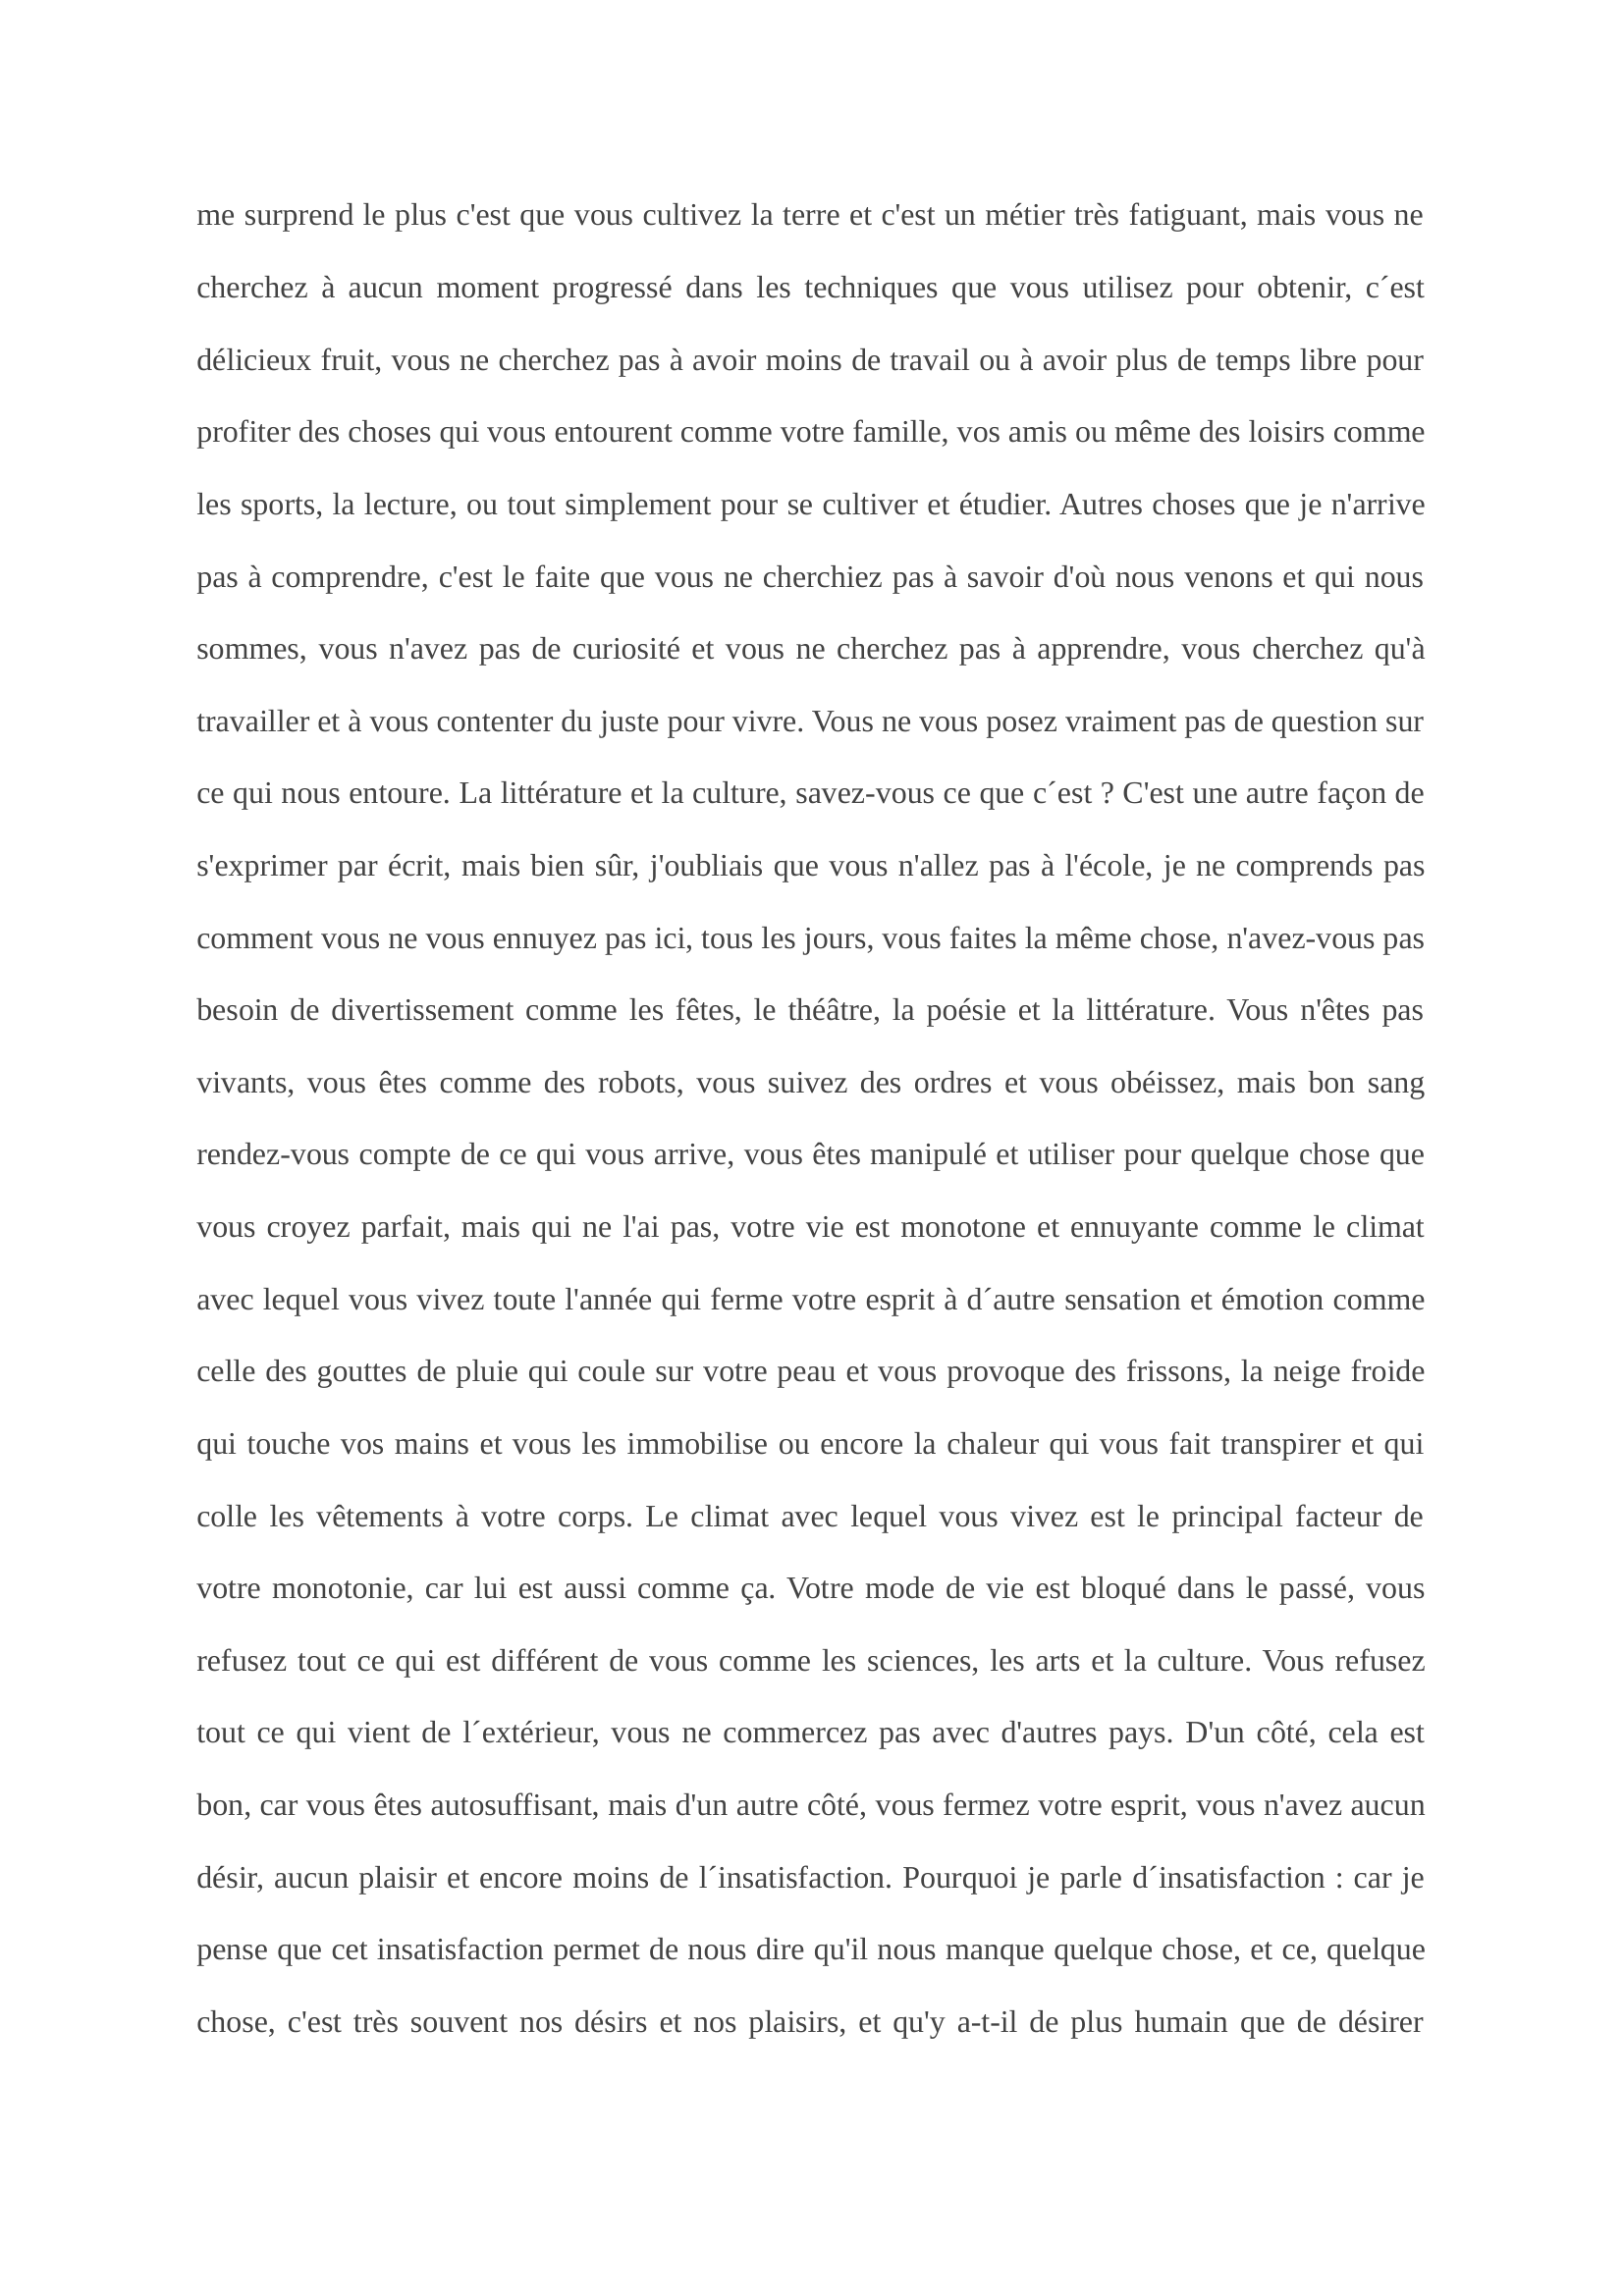 Prévisualisation du document Sujet d'invention sur La Bétique extrait  du roman Les Aventures de Télémaque.